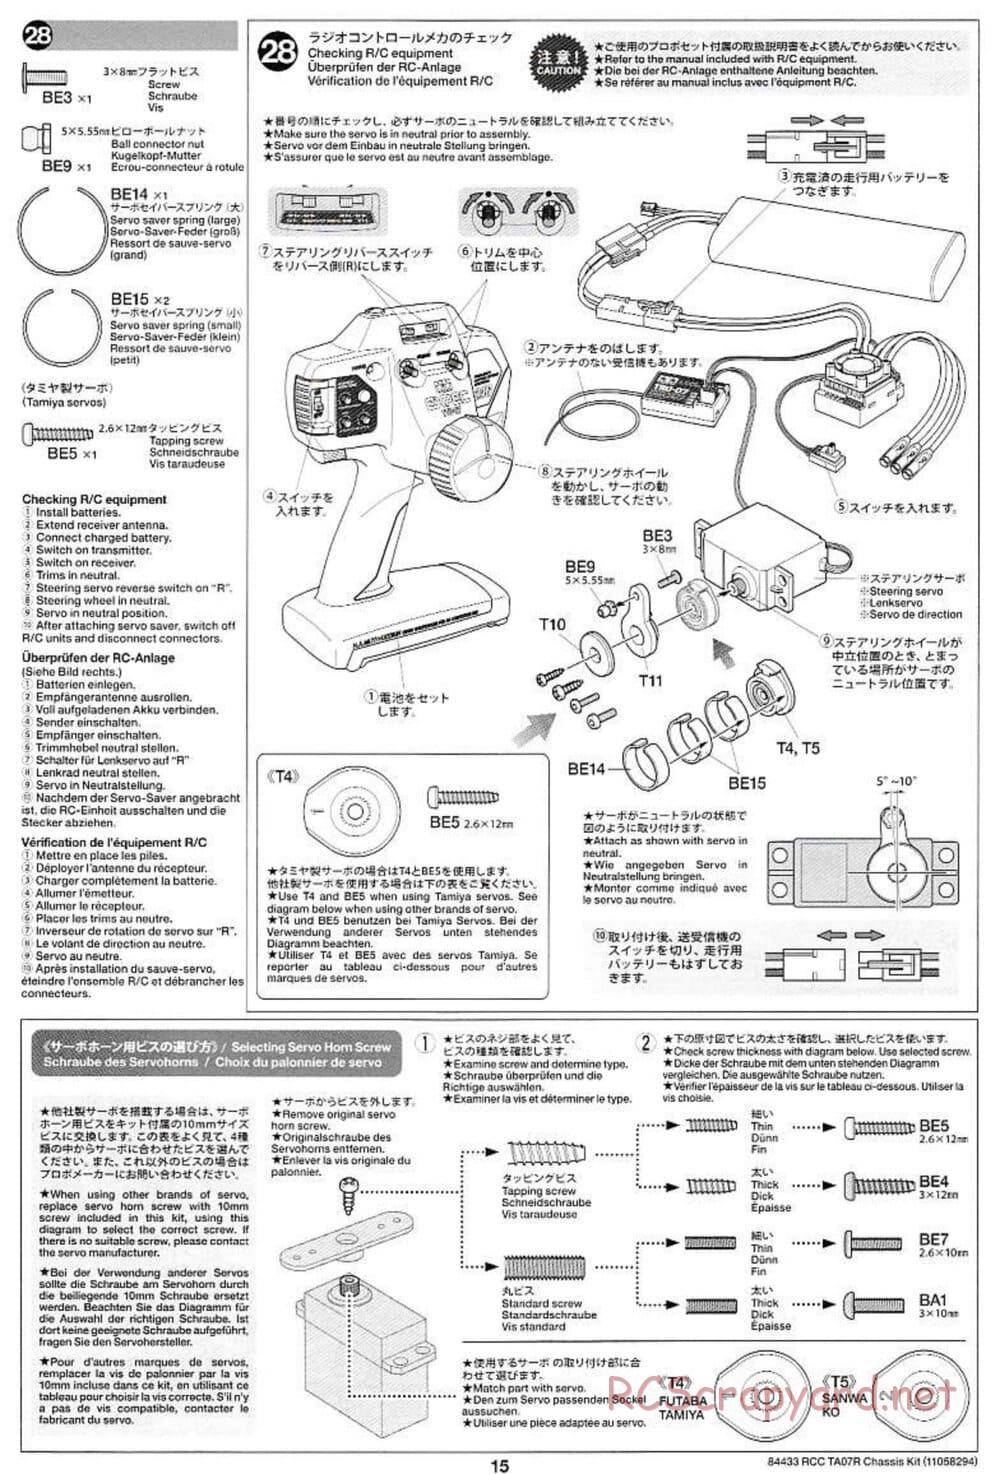 Tamiya - TA07 R Chassis - Manual - Page 15